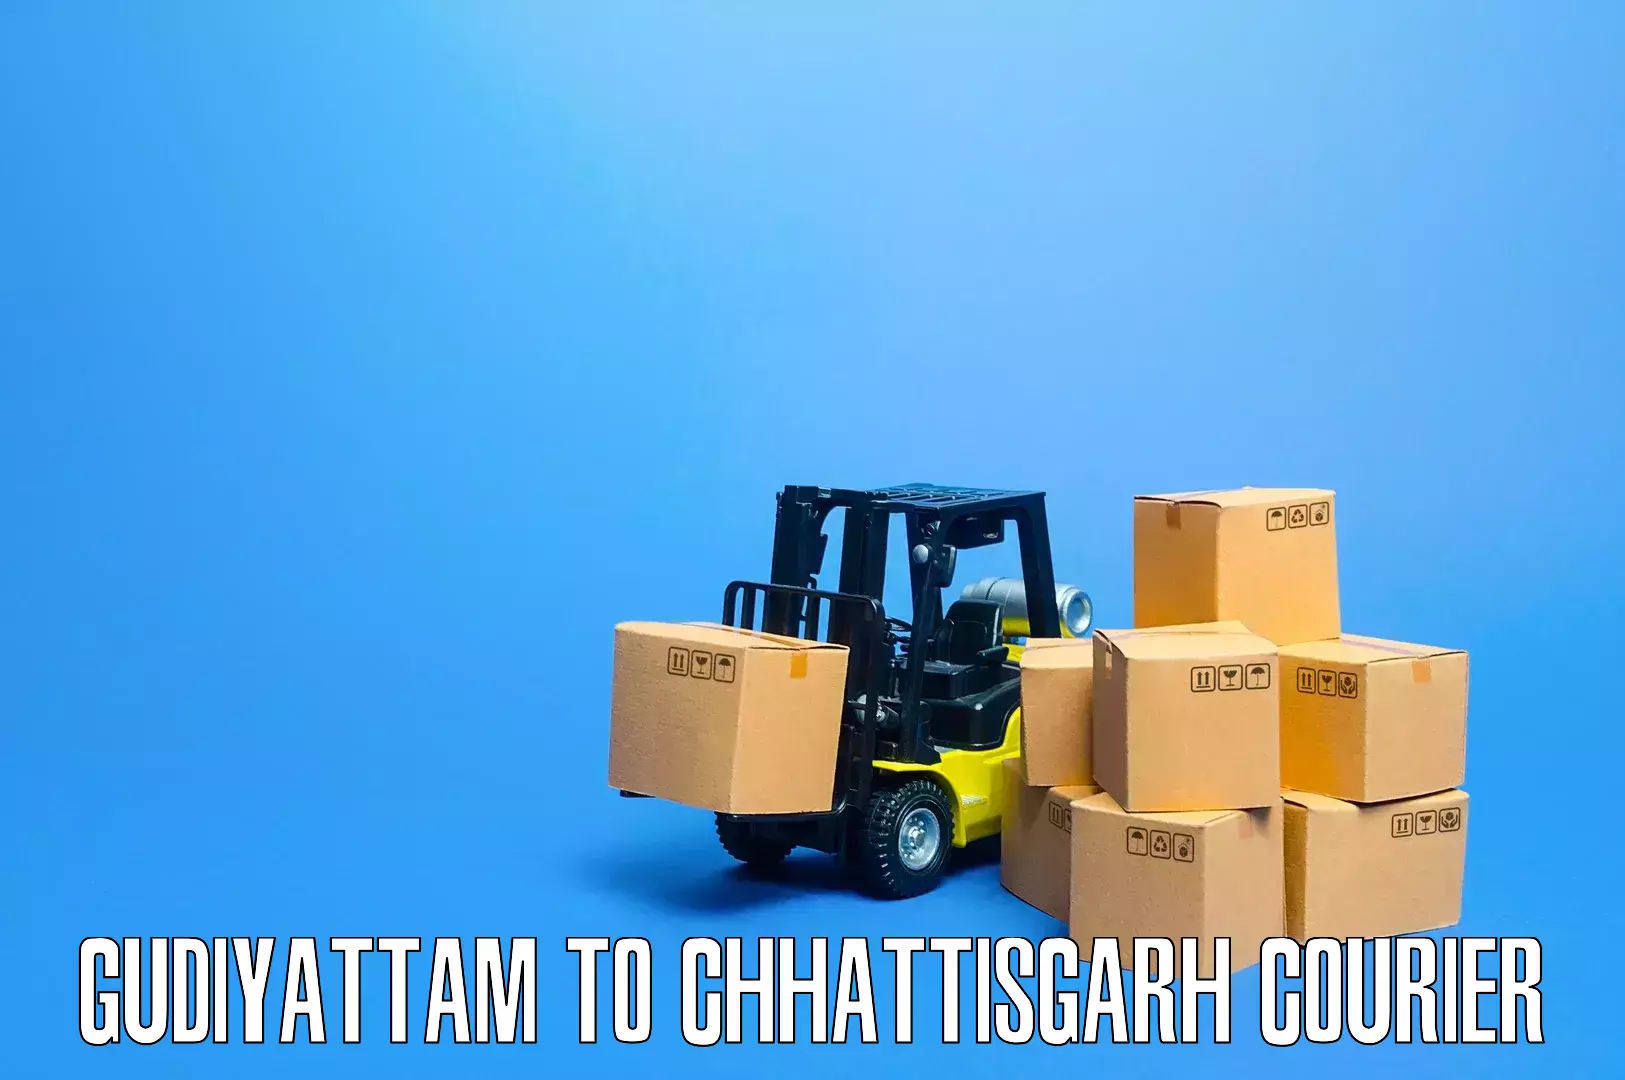 Professional moving company Gudiyattam to Dhamtari